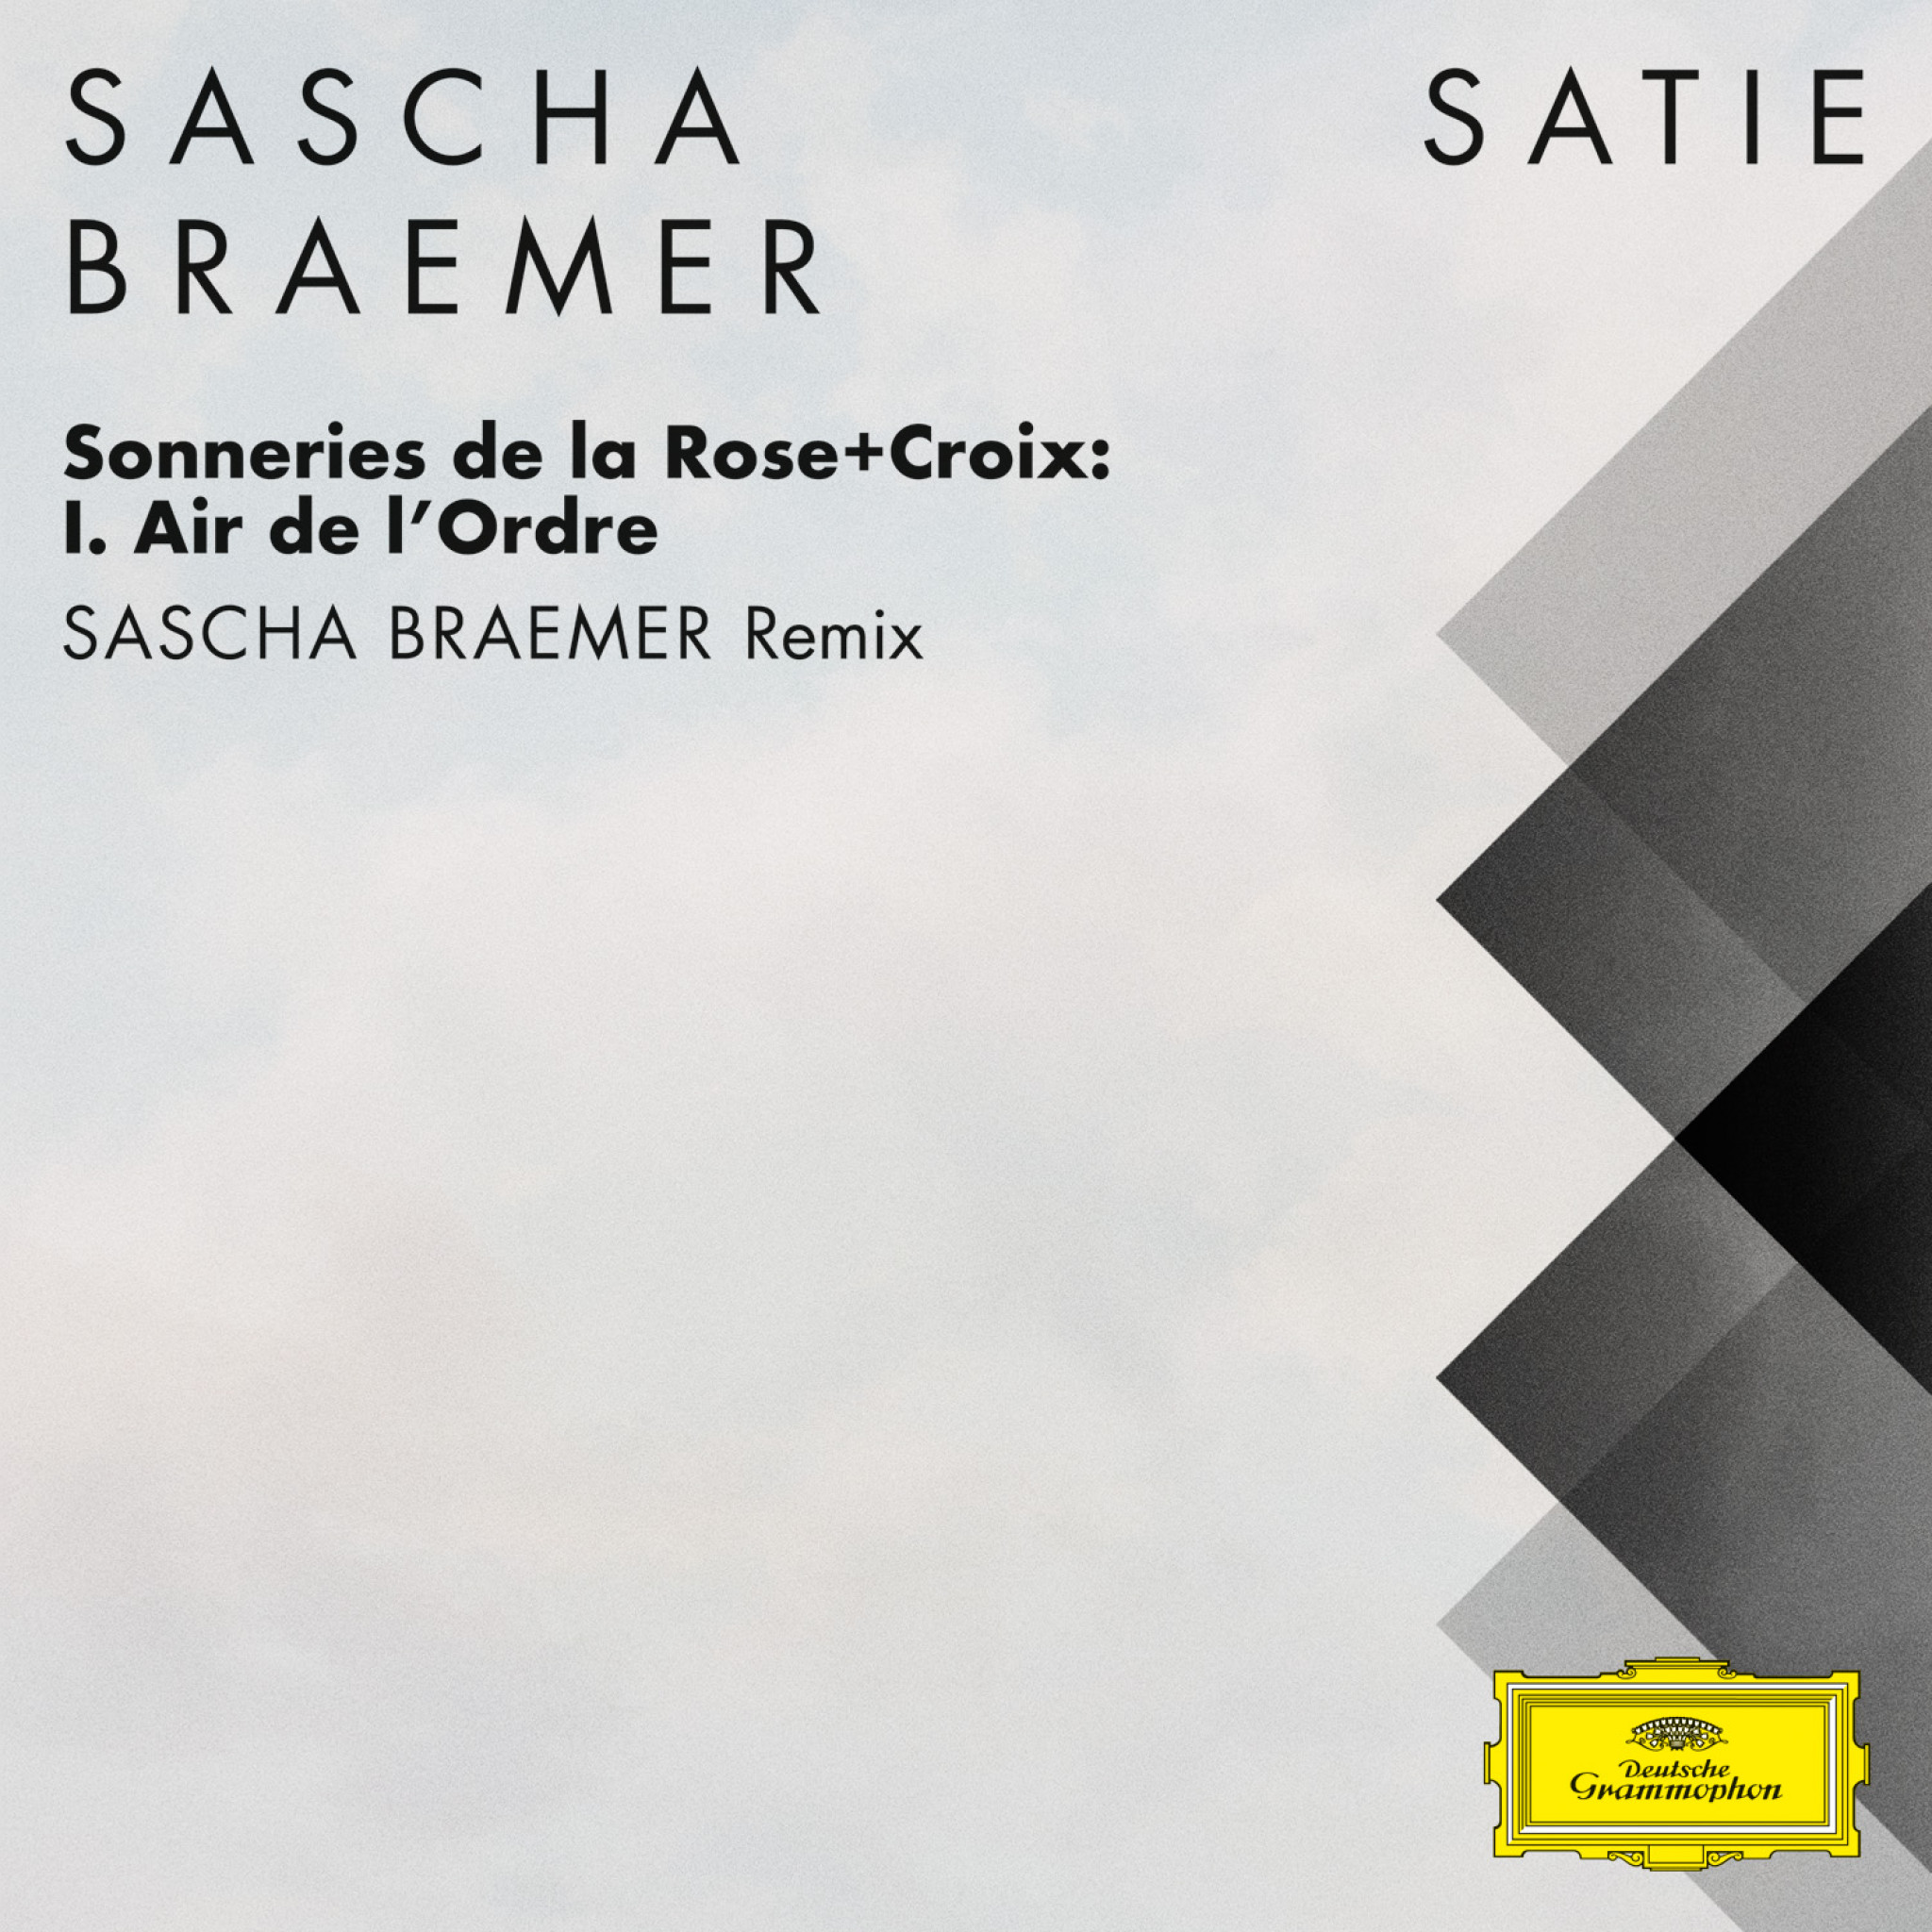 Sascha Braemer - Satie Sonneries de la Rose+Croix: I. Air de l'Ordre Remix Cover